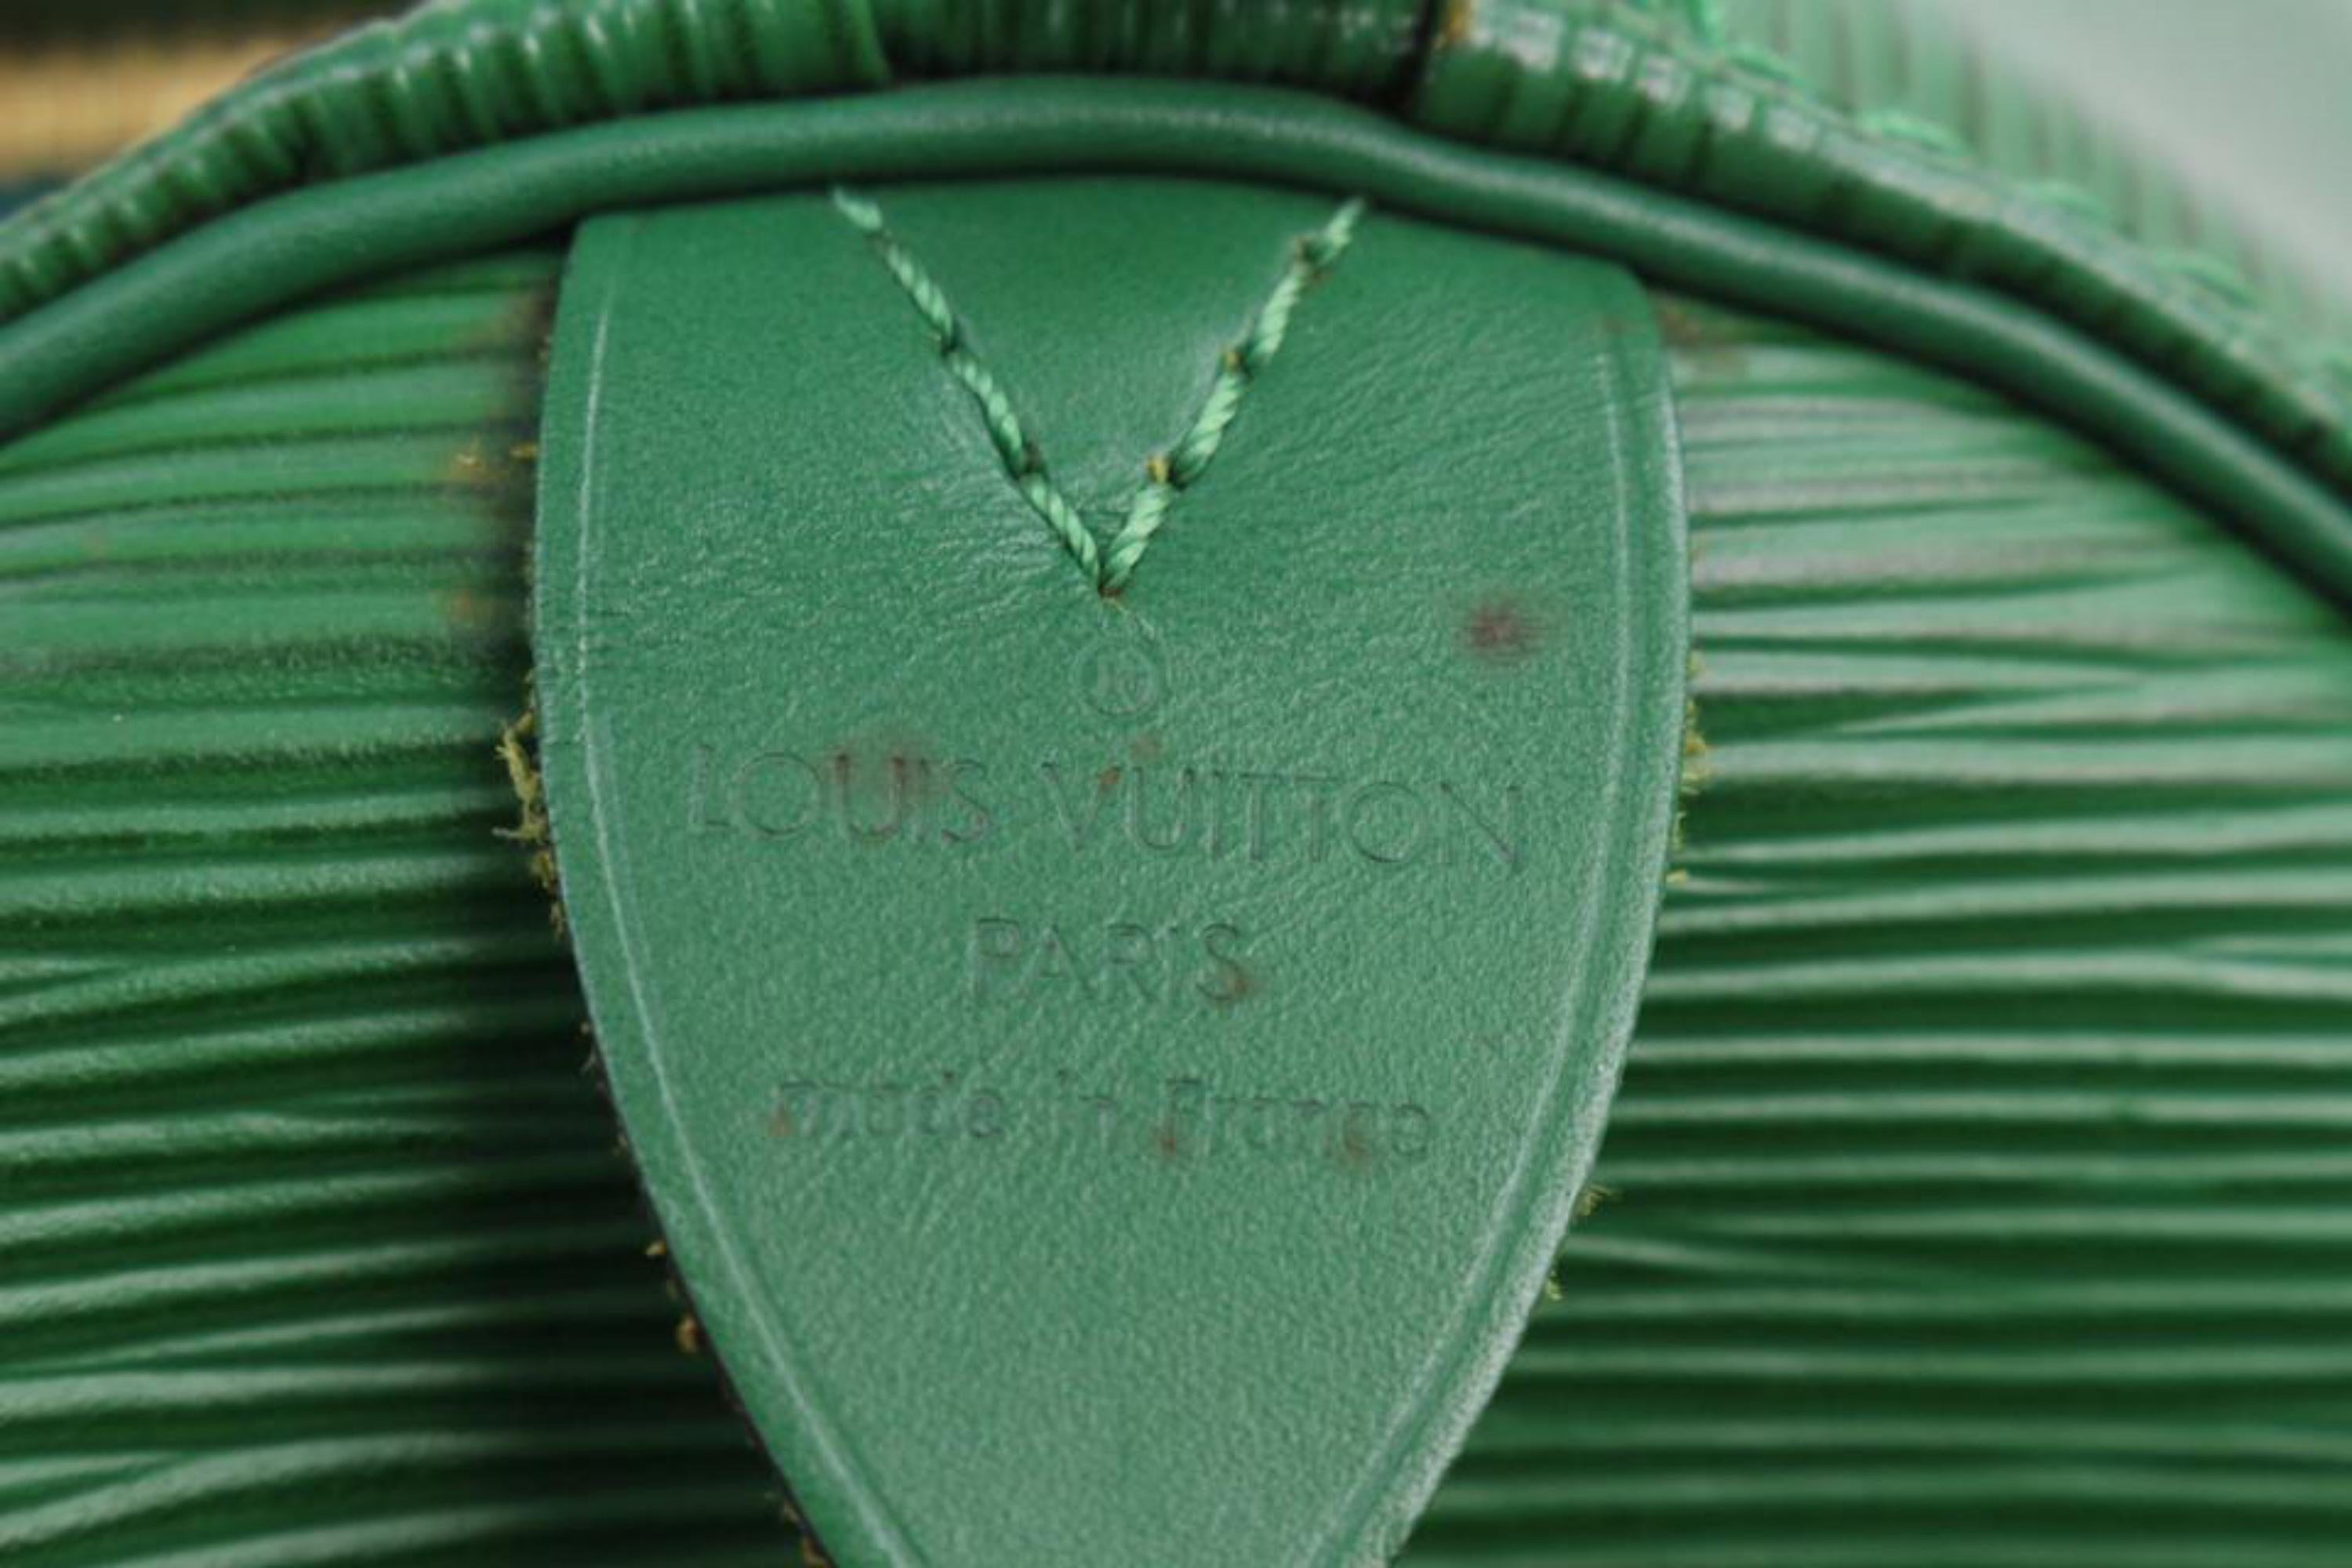 Louis Vuitton Green Epi Leather Keepall 55 Boston Bag 123lv27 4